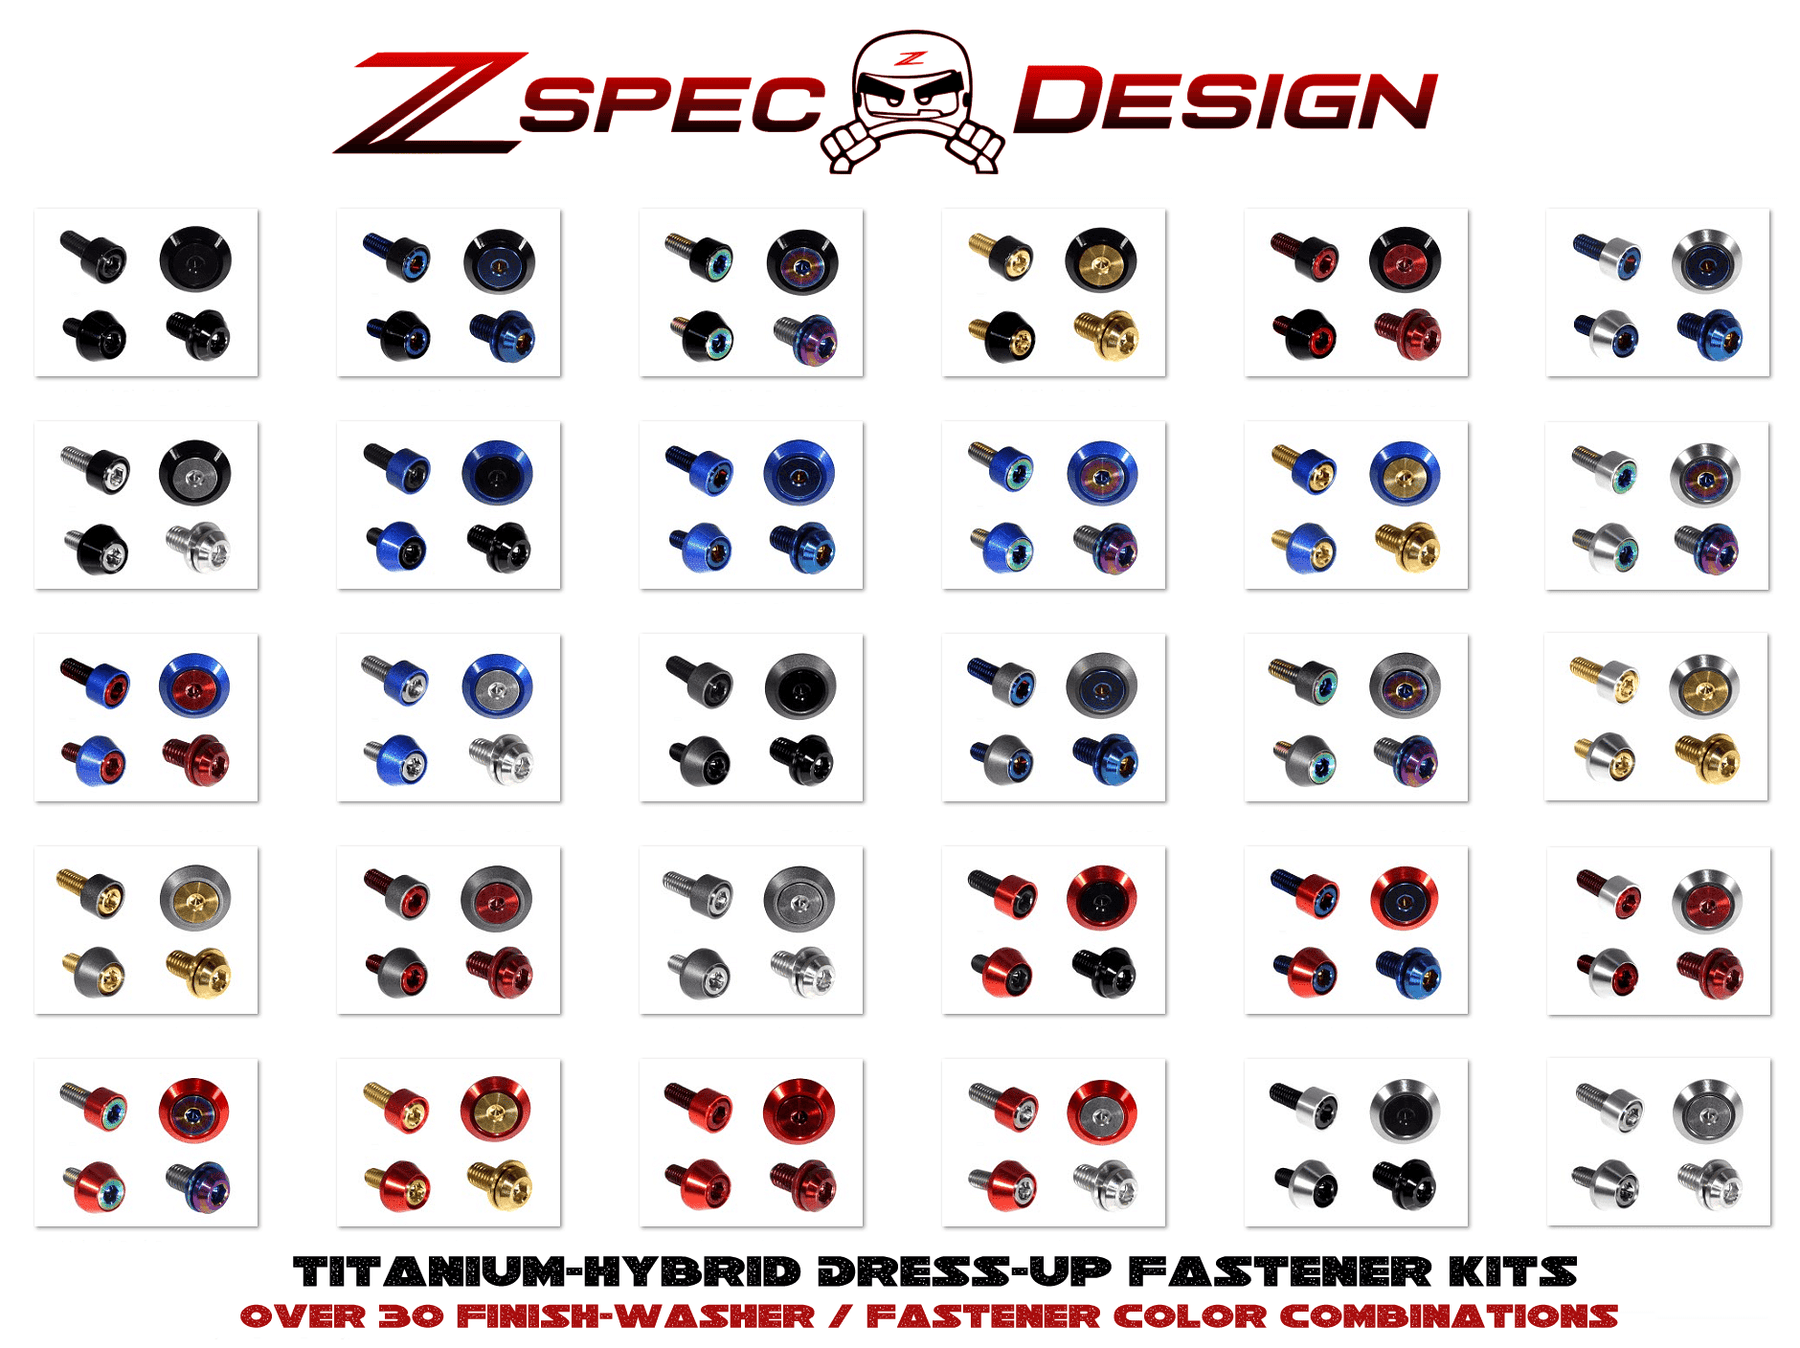 ZSPEC Dress-Up Fastener Kit for '90-99 Nissan 300zx Z32, Titanium/Billet GR5 Grade-5 Dress Up Bolts Fasteners Washers Red Blue Purple Gold Burned Black